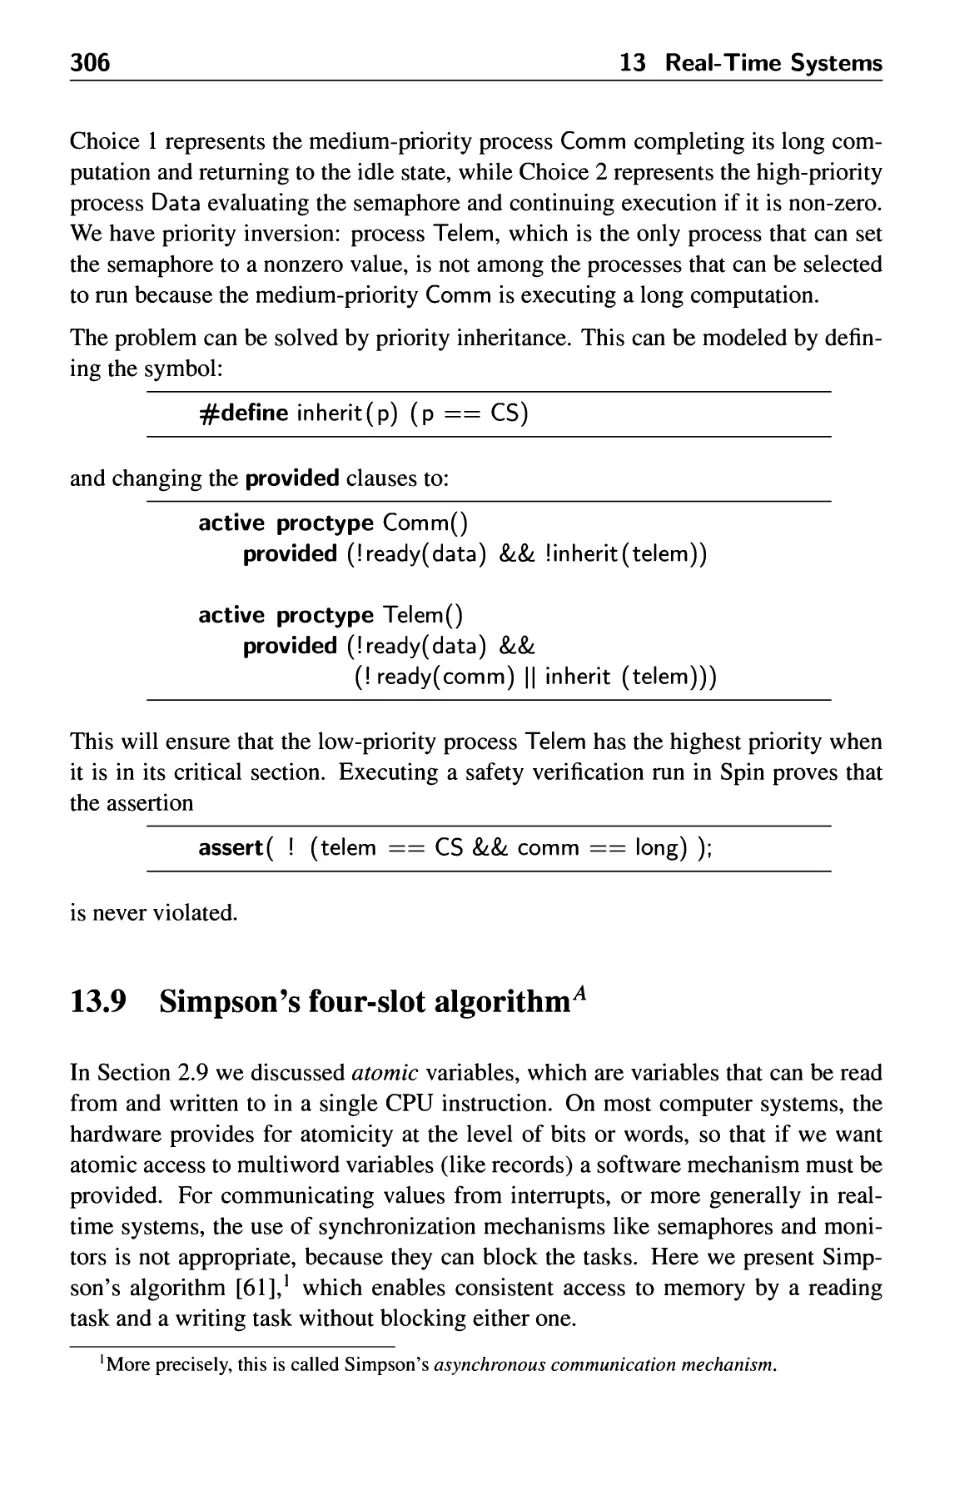 13.9 Simpson's four-slot algorithm